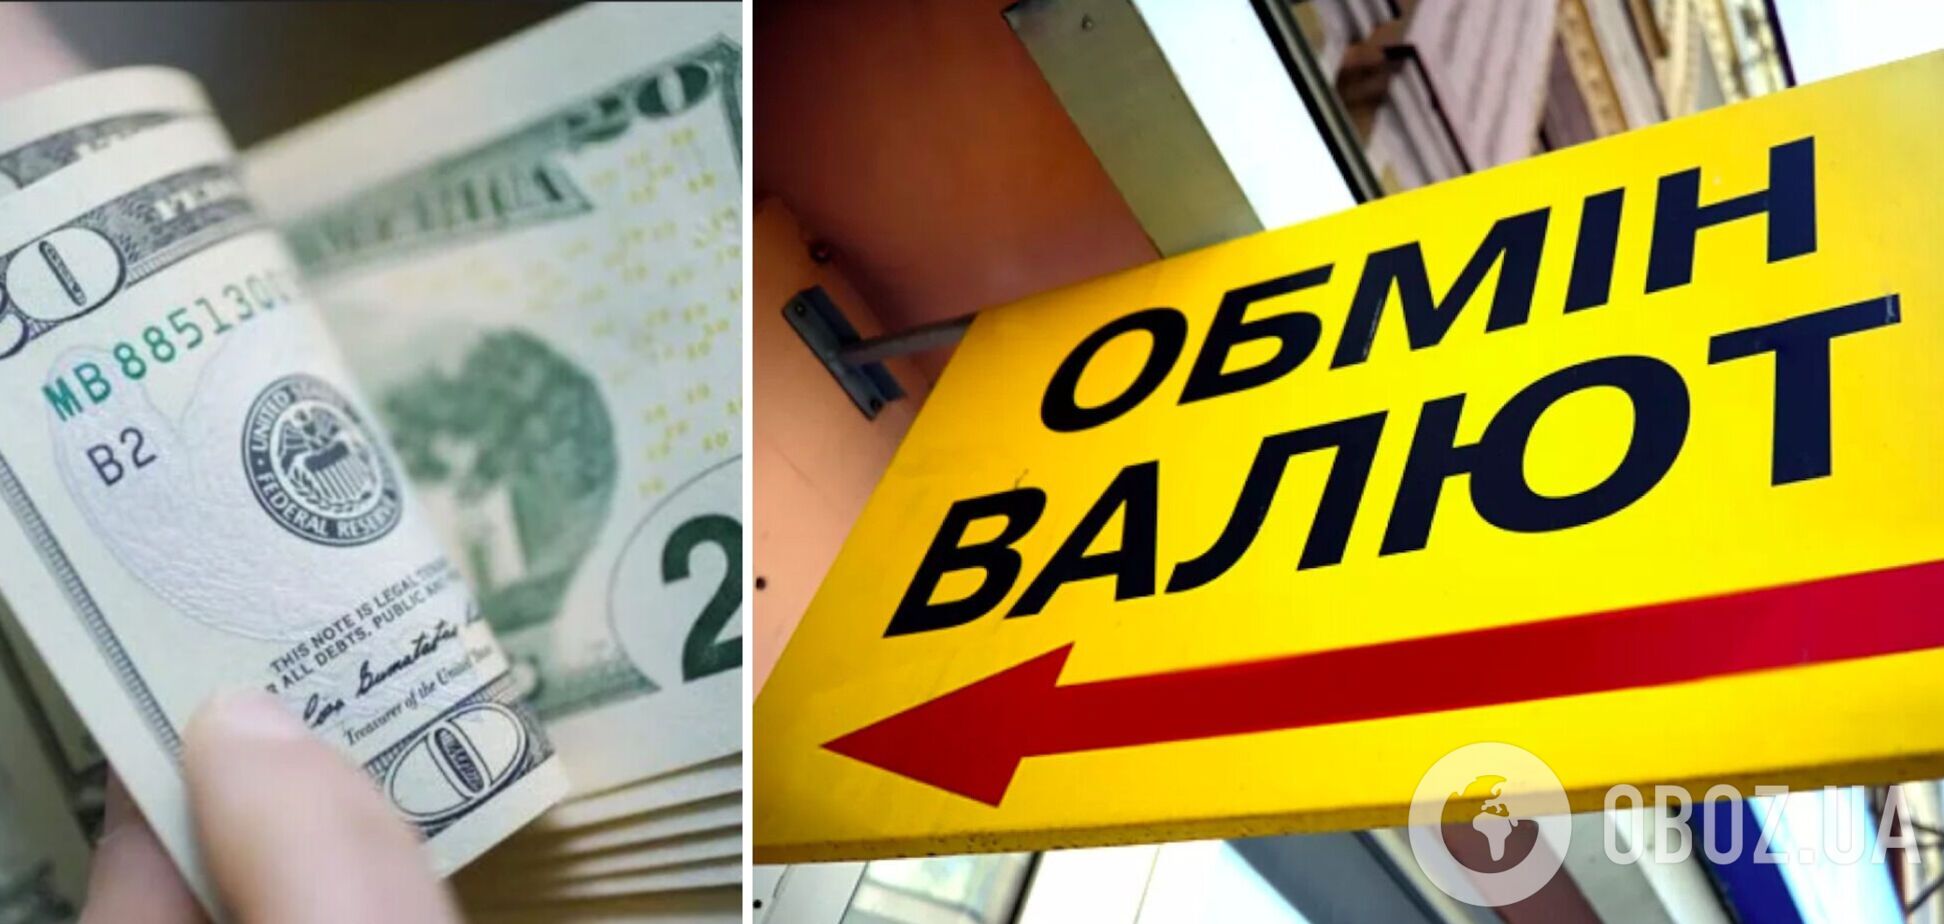 В украинских обменниках установили новый курс доллара